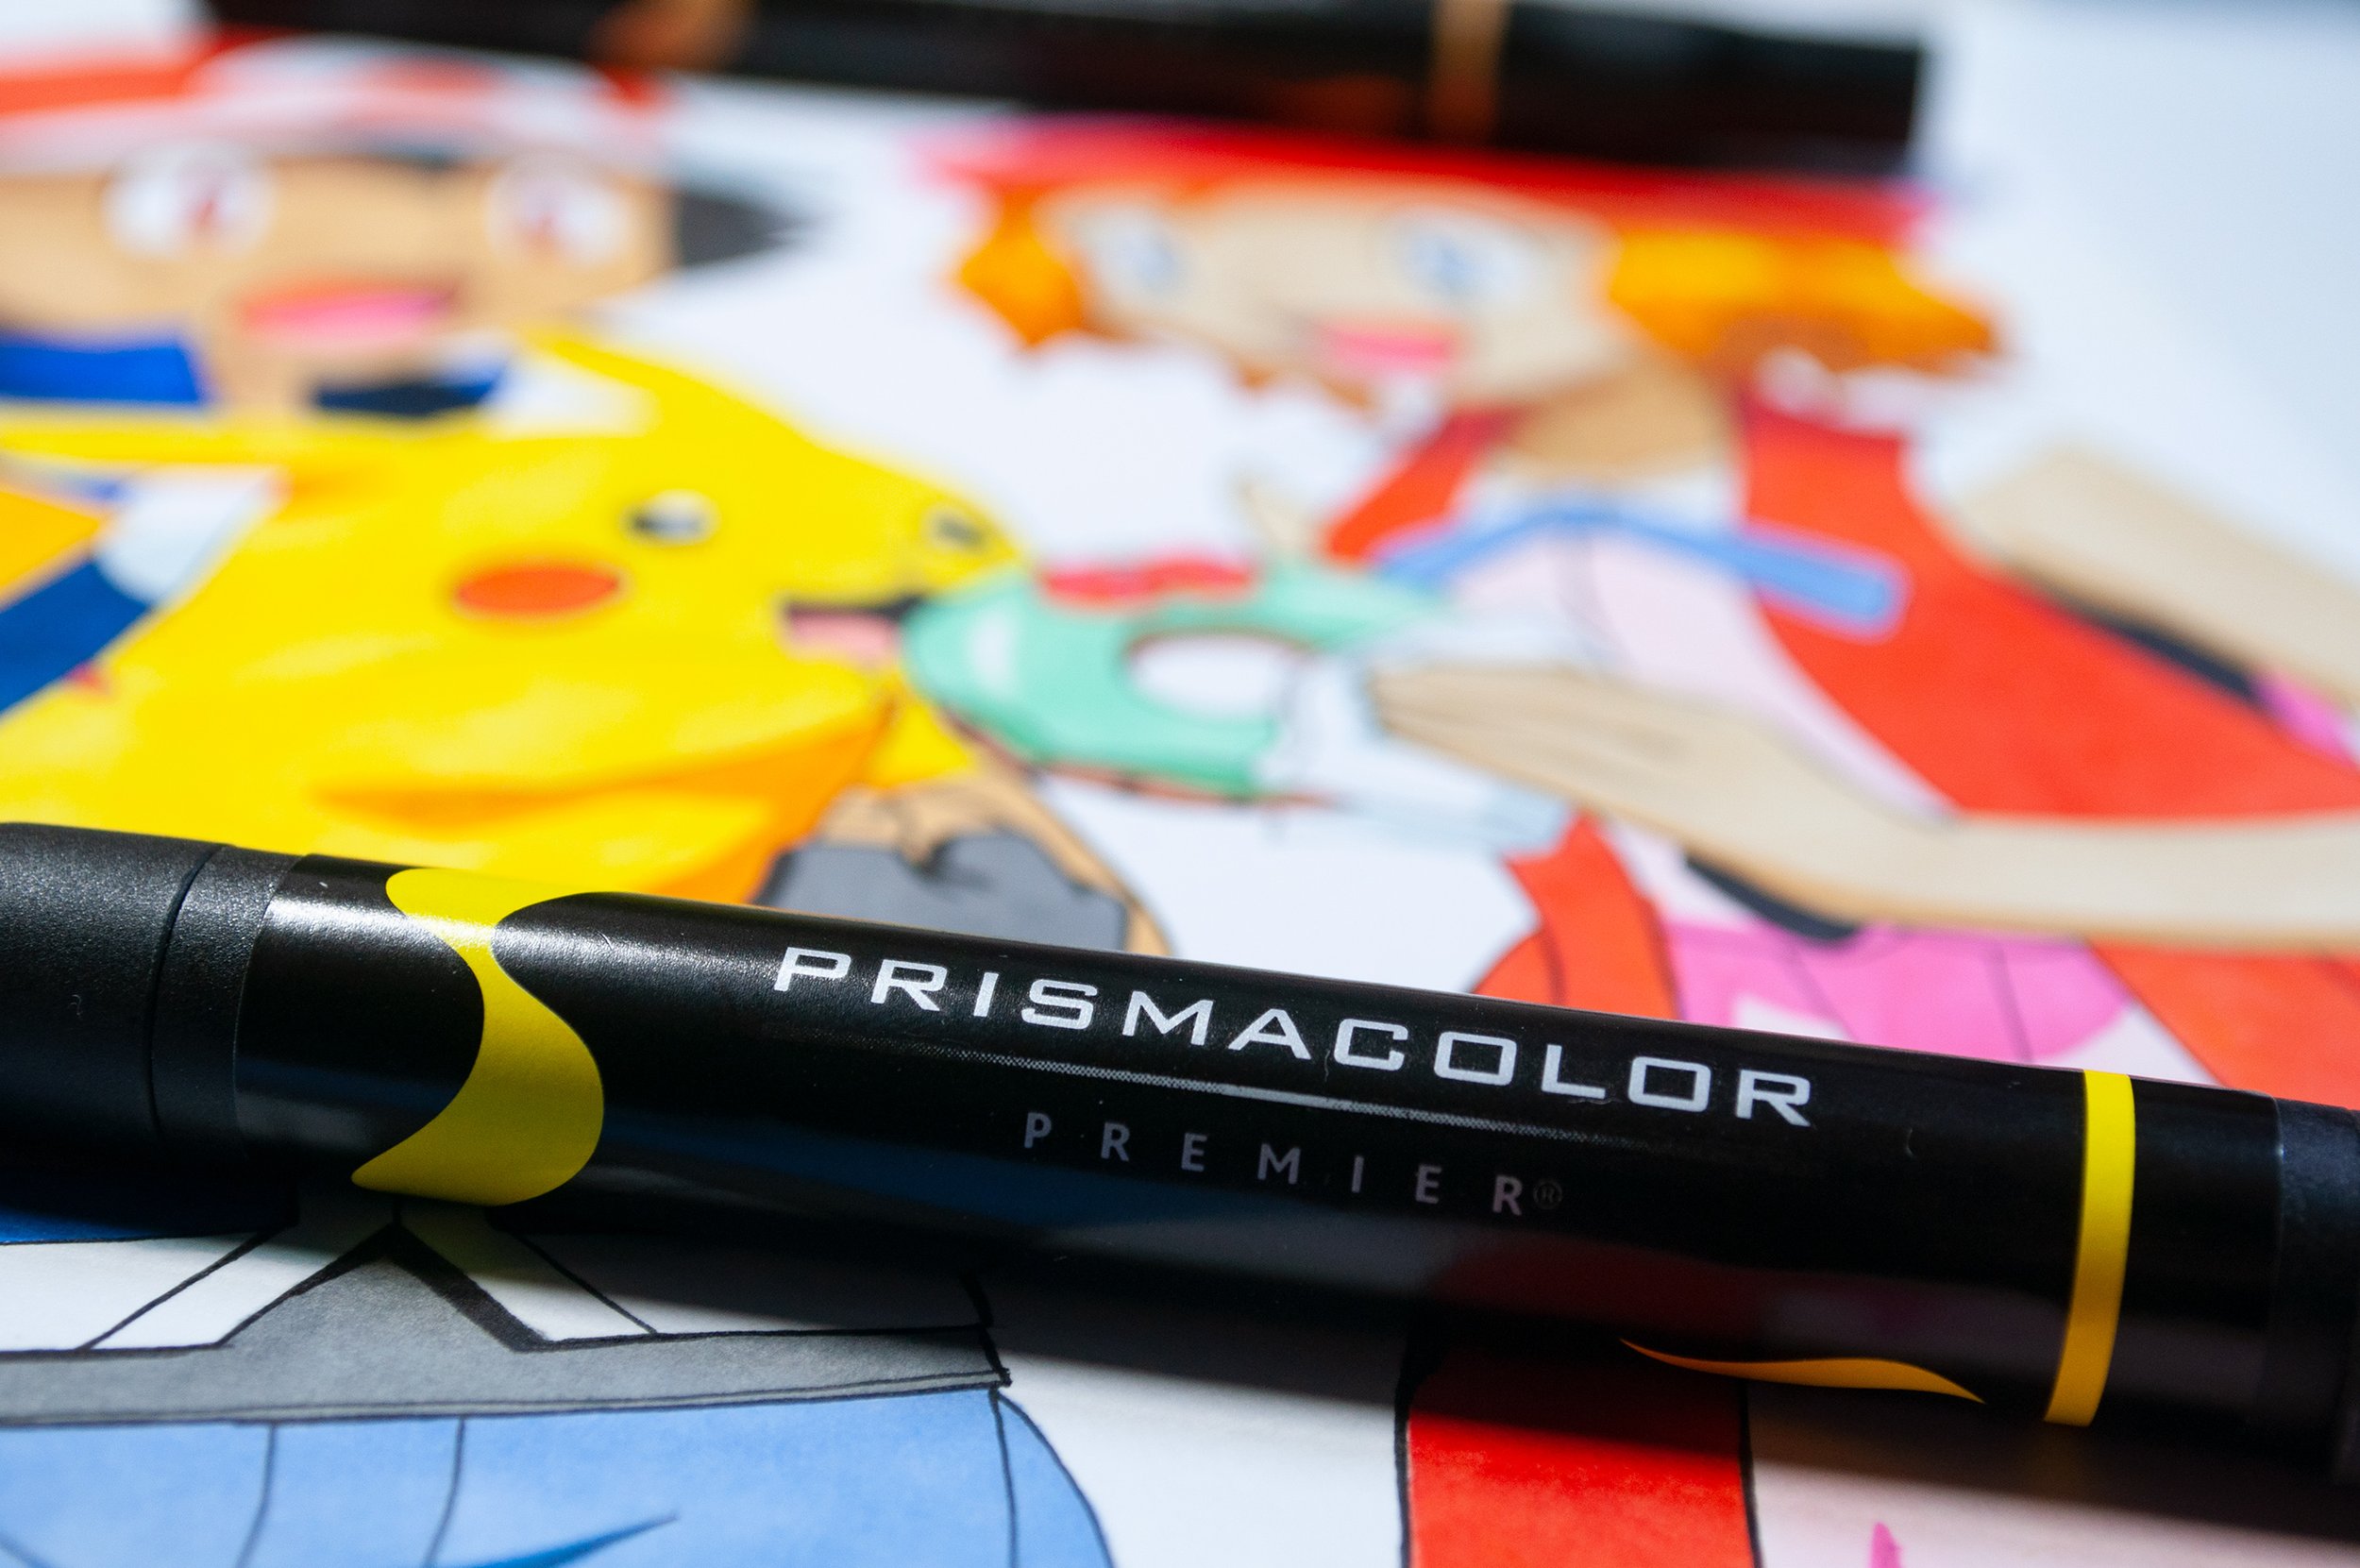 Prismacolor Premier Art Marker Set, Chisel/Fine, 12-Colors